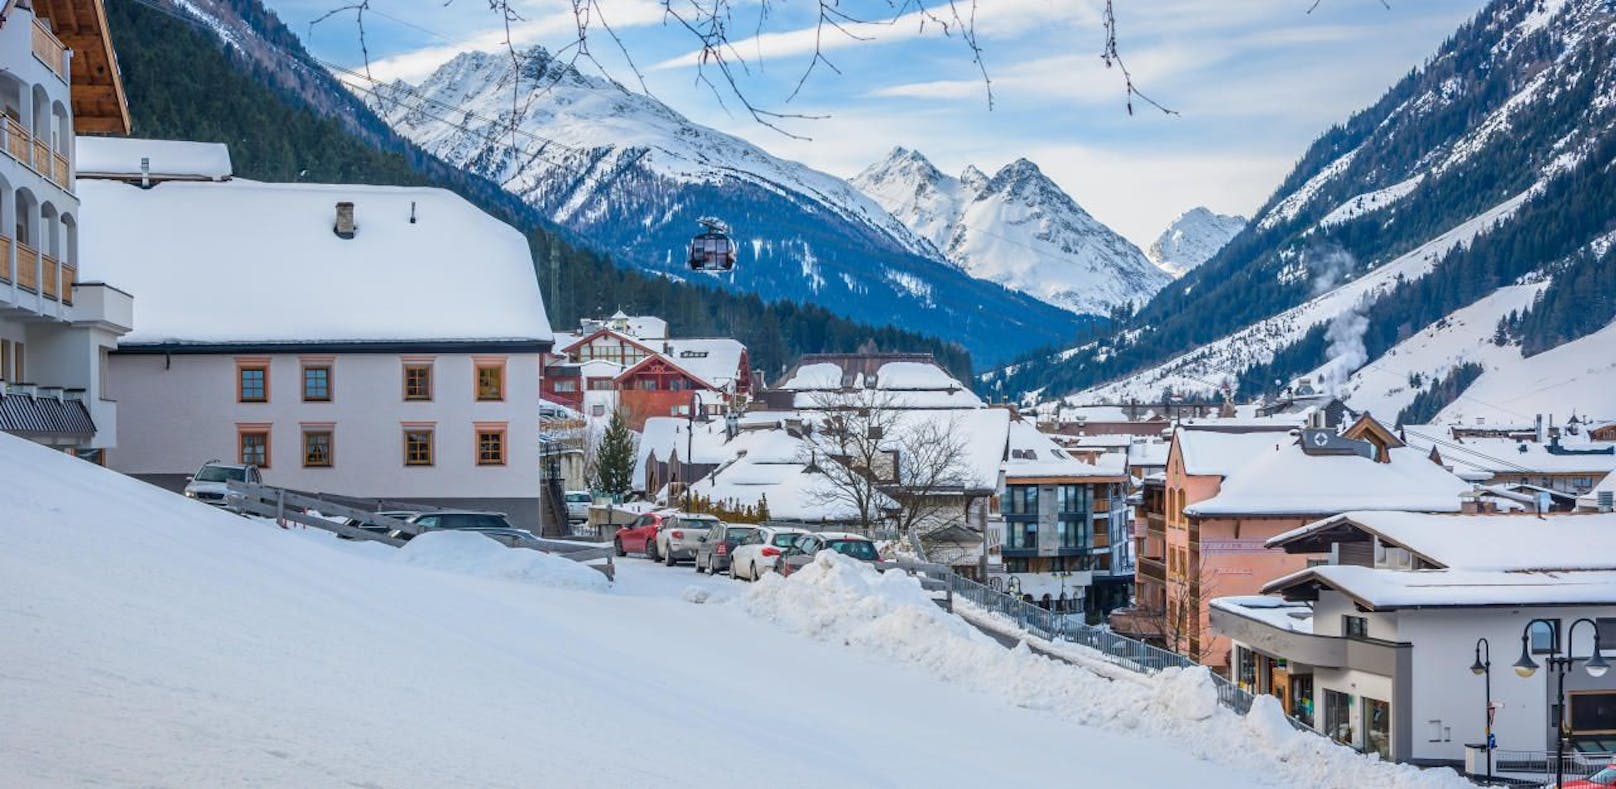 Der Tiroler Skiort Ischgl gilt als einer der Corona-Hotspots des Landes.